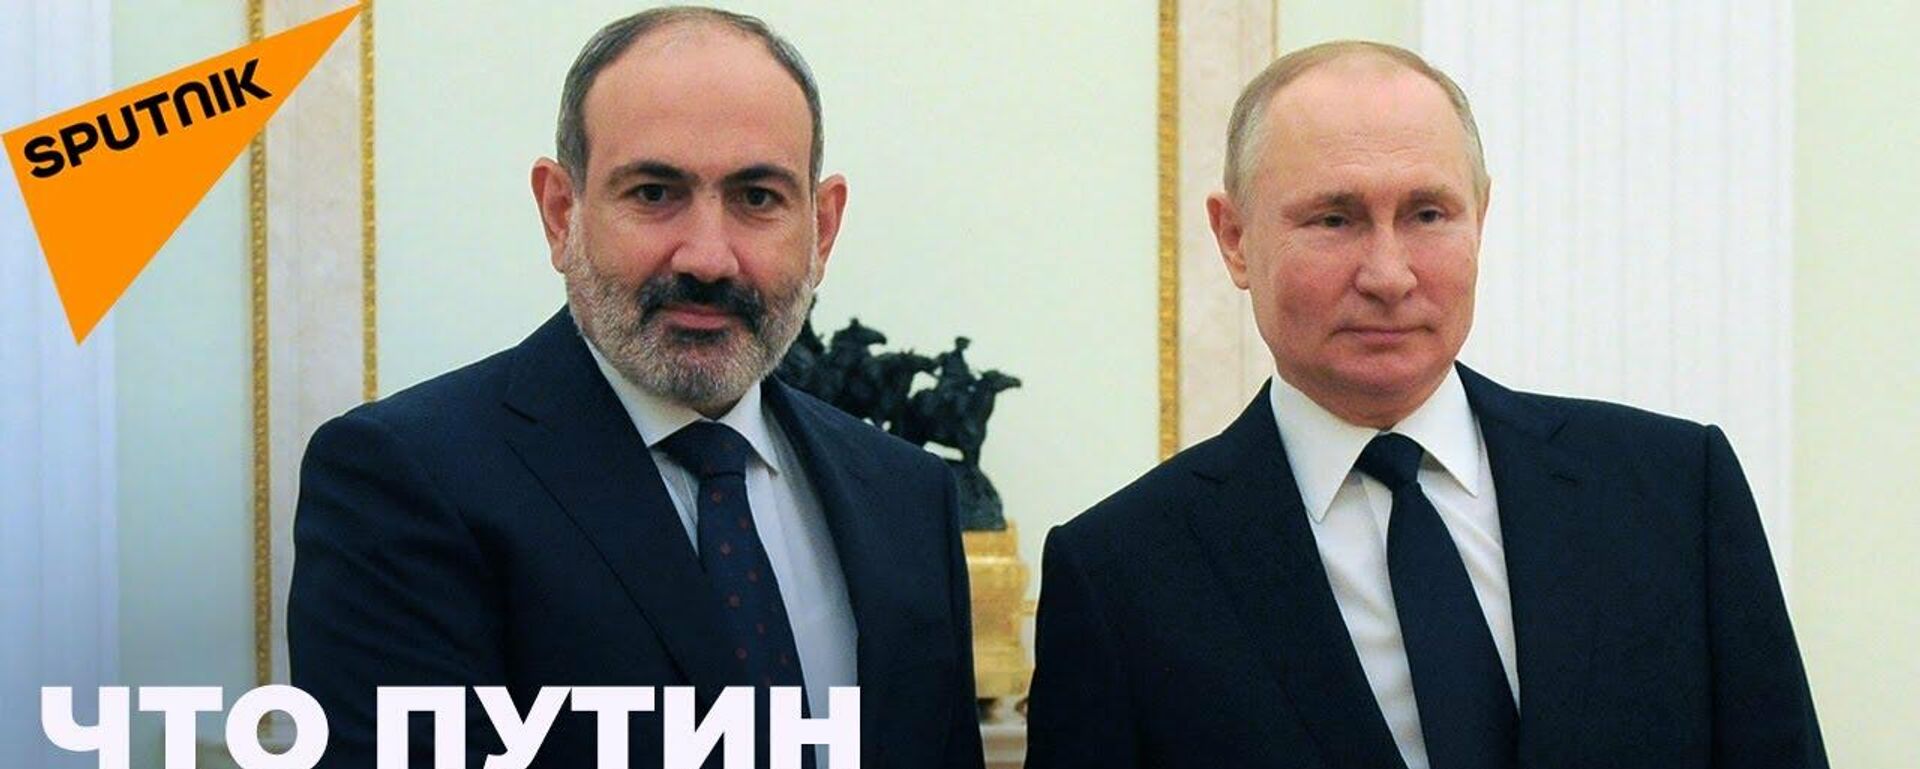 Путин провел встречу с Пашиняном: о чем говорили президент РФ и премьер Армении - Sputnik Узбекистан, 1920, 13.10.2021